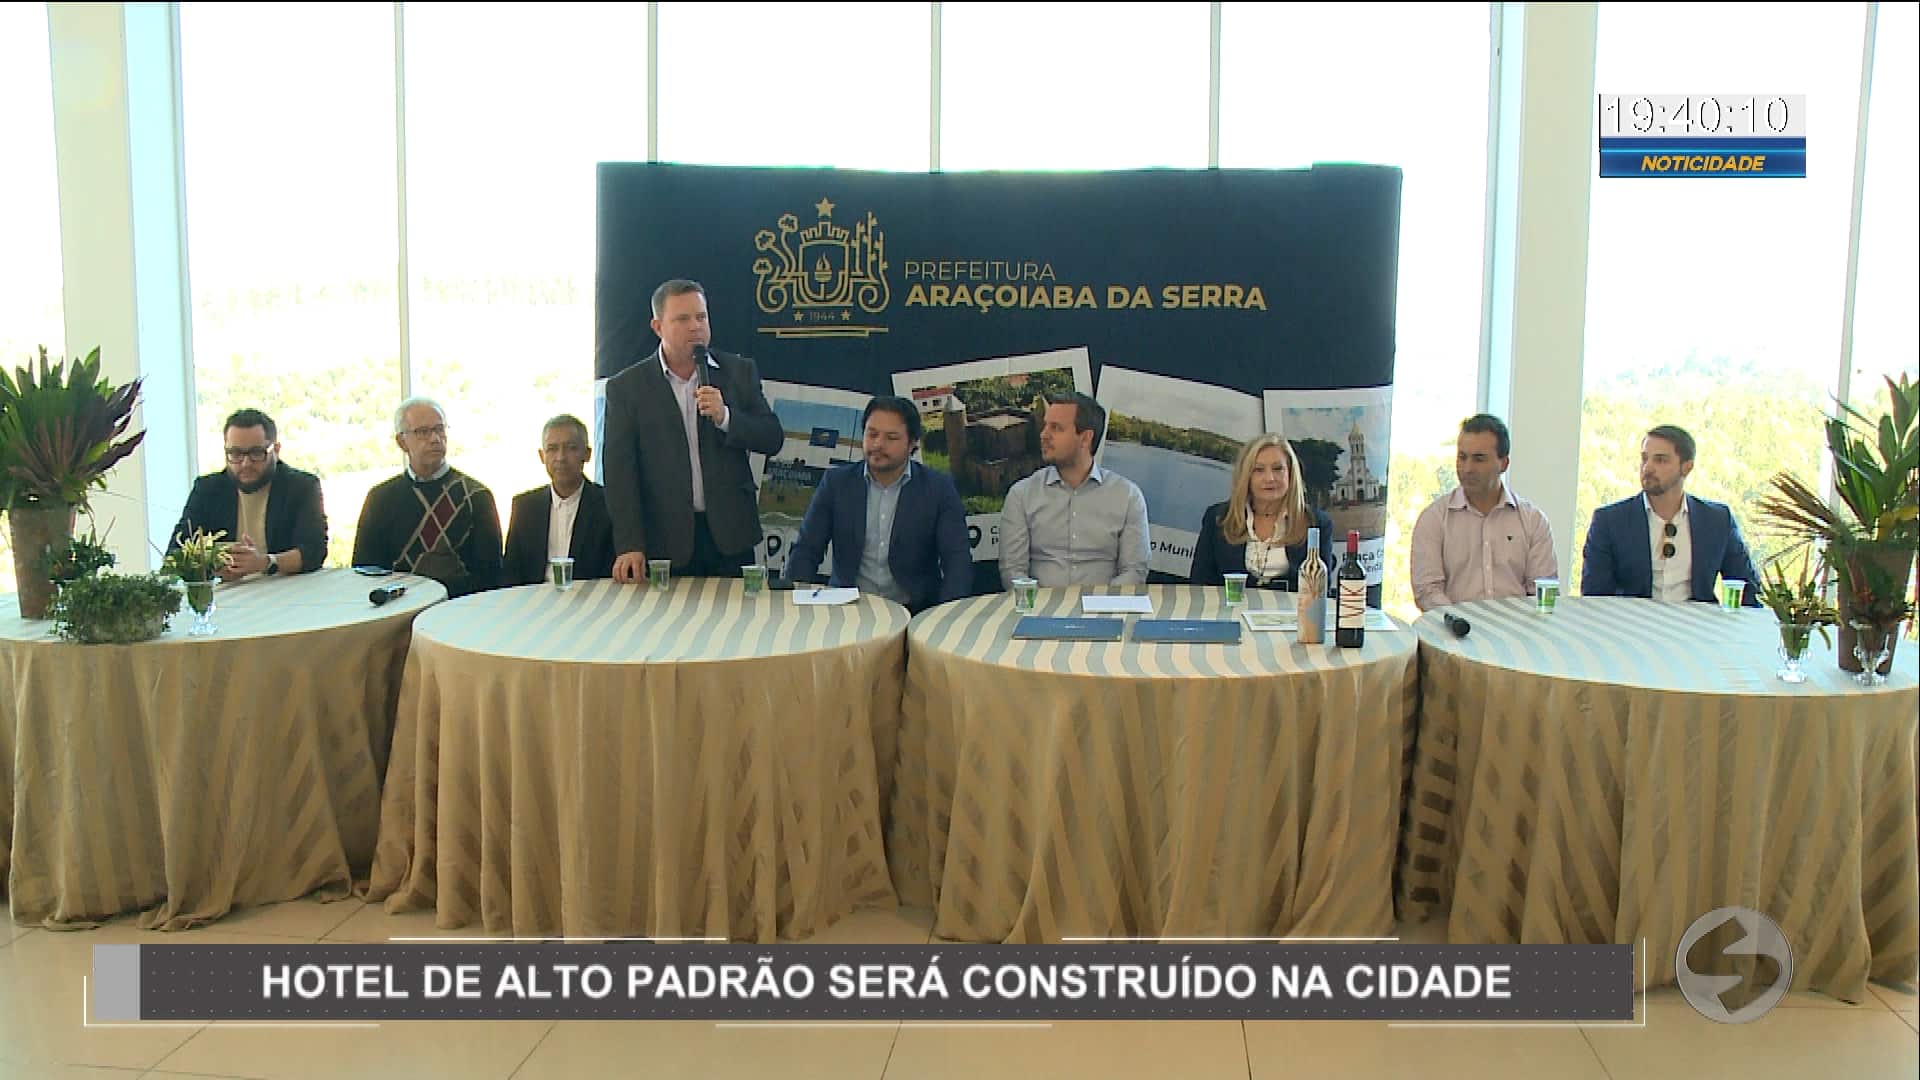 Hotel de alto padrão será construído em Araçoiaba da Serra